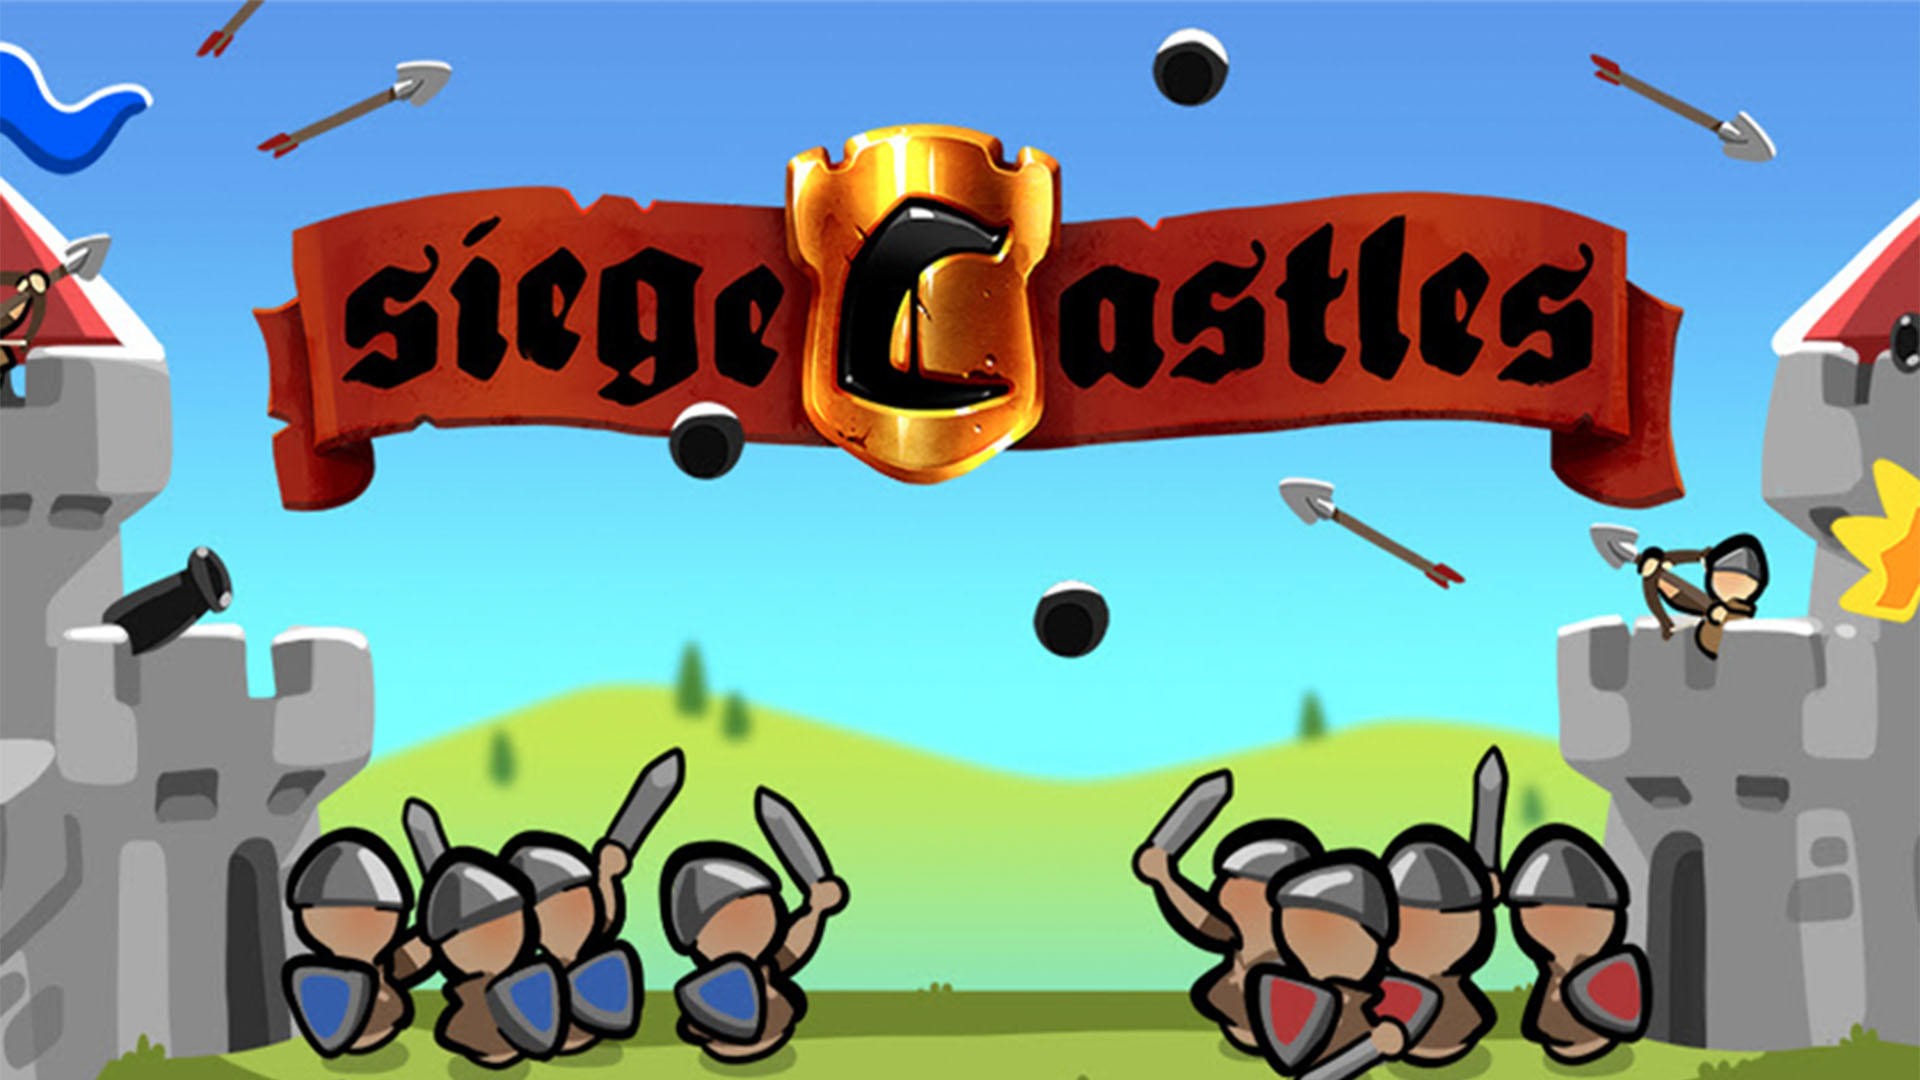 Banner of Siege Castles 1.7.28